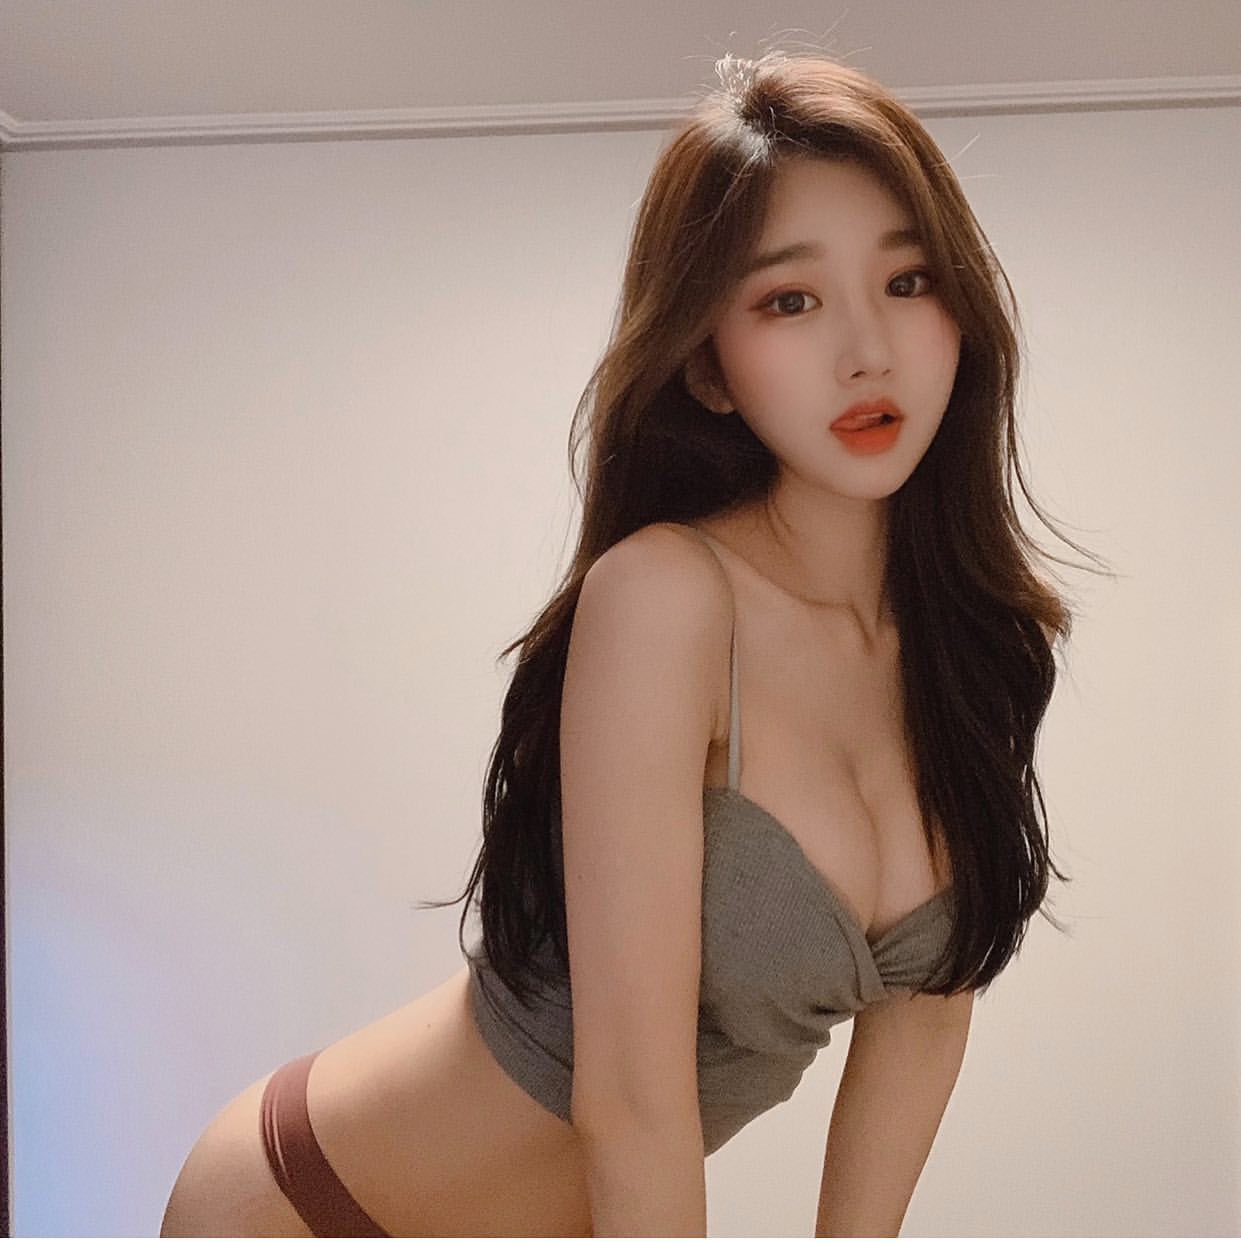 Naked korean girl models